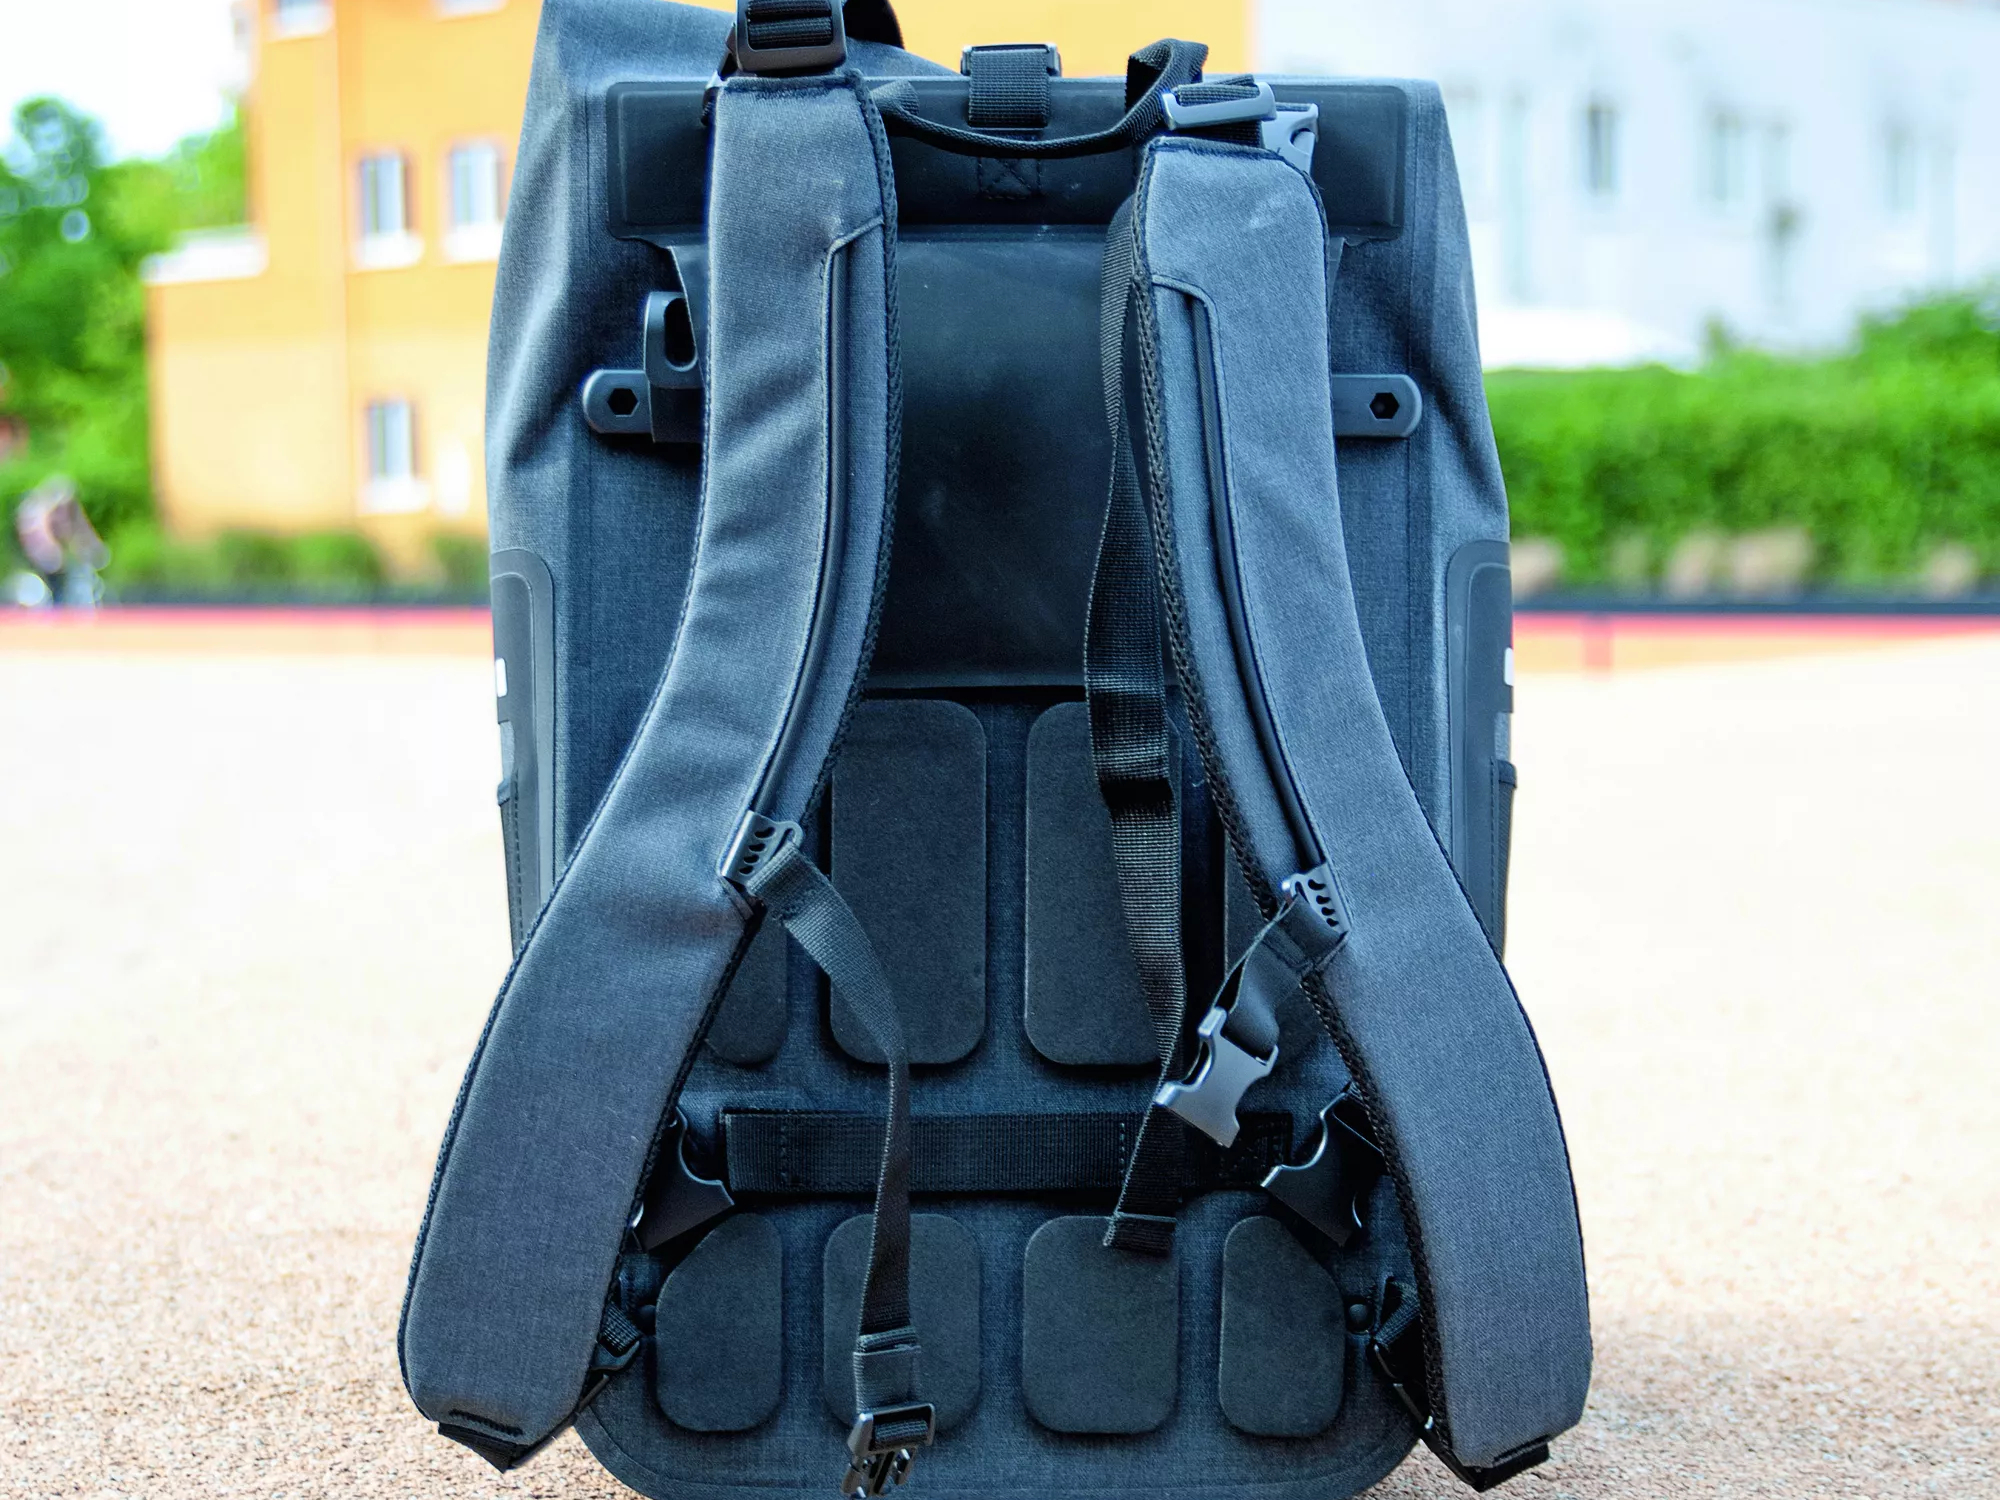 Fahrradtaschen und -rucksäcke für's Pendeln - 12 Modelle im Test | MYBIKE